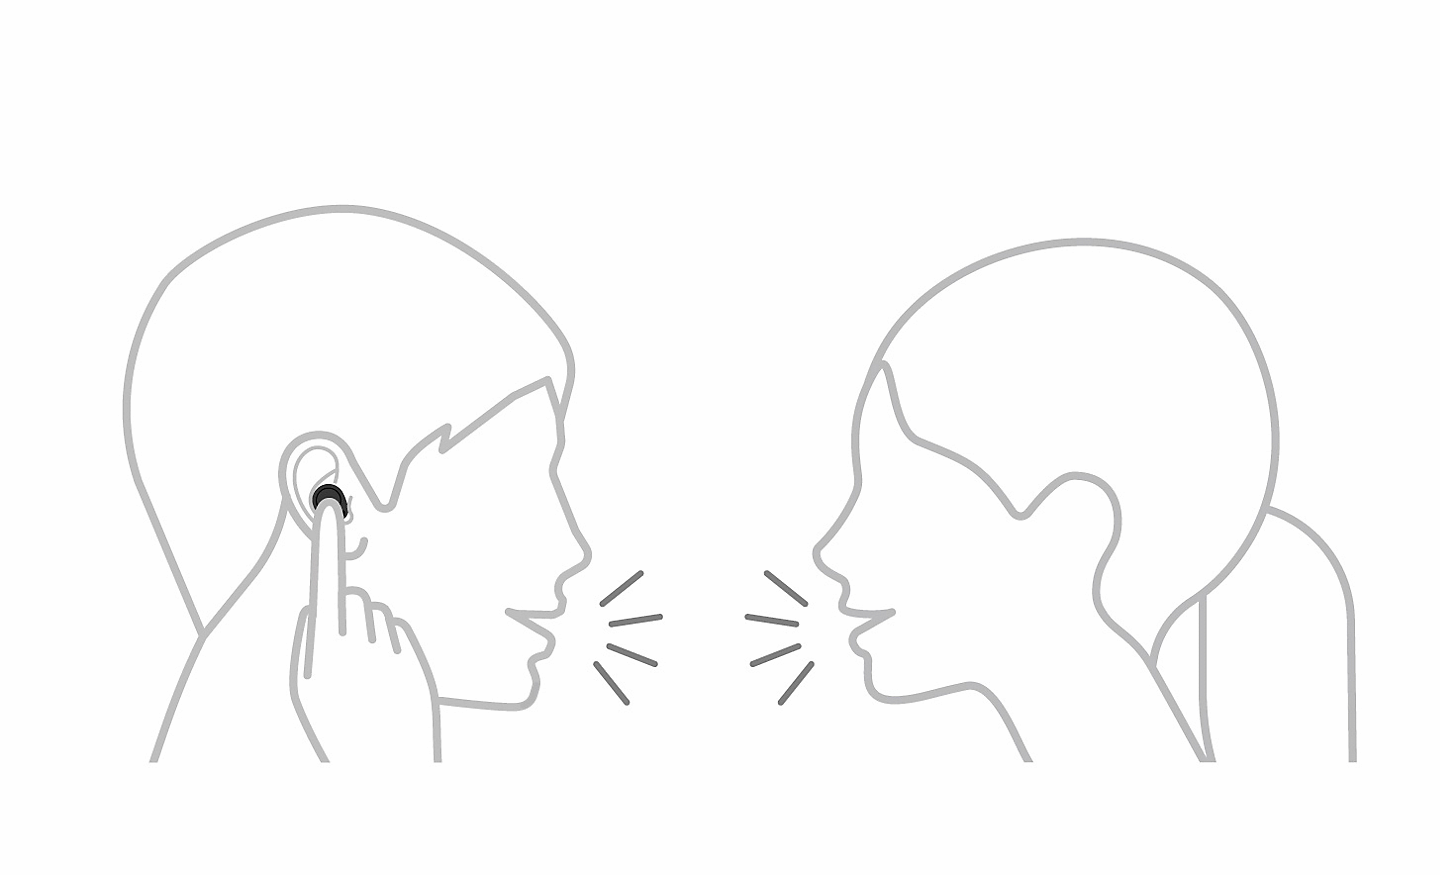 두 사람이 이야기를 하고 있는 그림. 한 사람은 손가락 하나로 이어폰을 만지고 있고, 일시 중지 아이콘이 왼쪽 상단에 있음